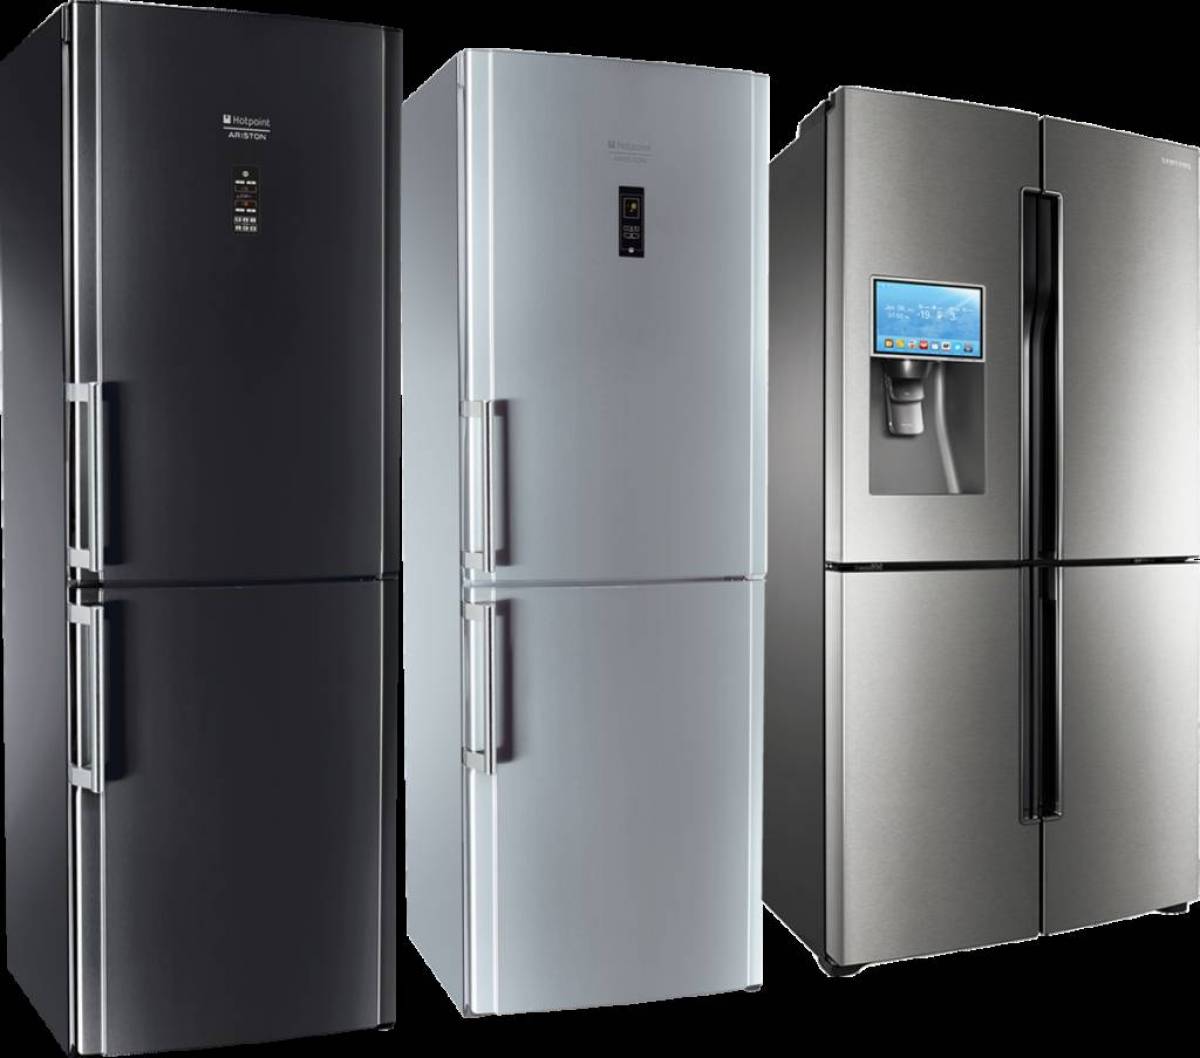 Холодильники новые модели. Холодильник Whirlpool WTNF 923 X. Холодильник Haier cef537awg. Холодильник многодверный Haier a3fe742cgbjru. Холодильник Samsung rf905qblaxw.